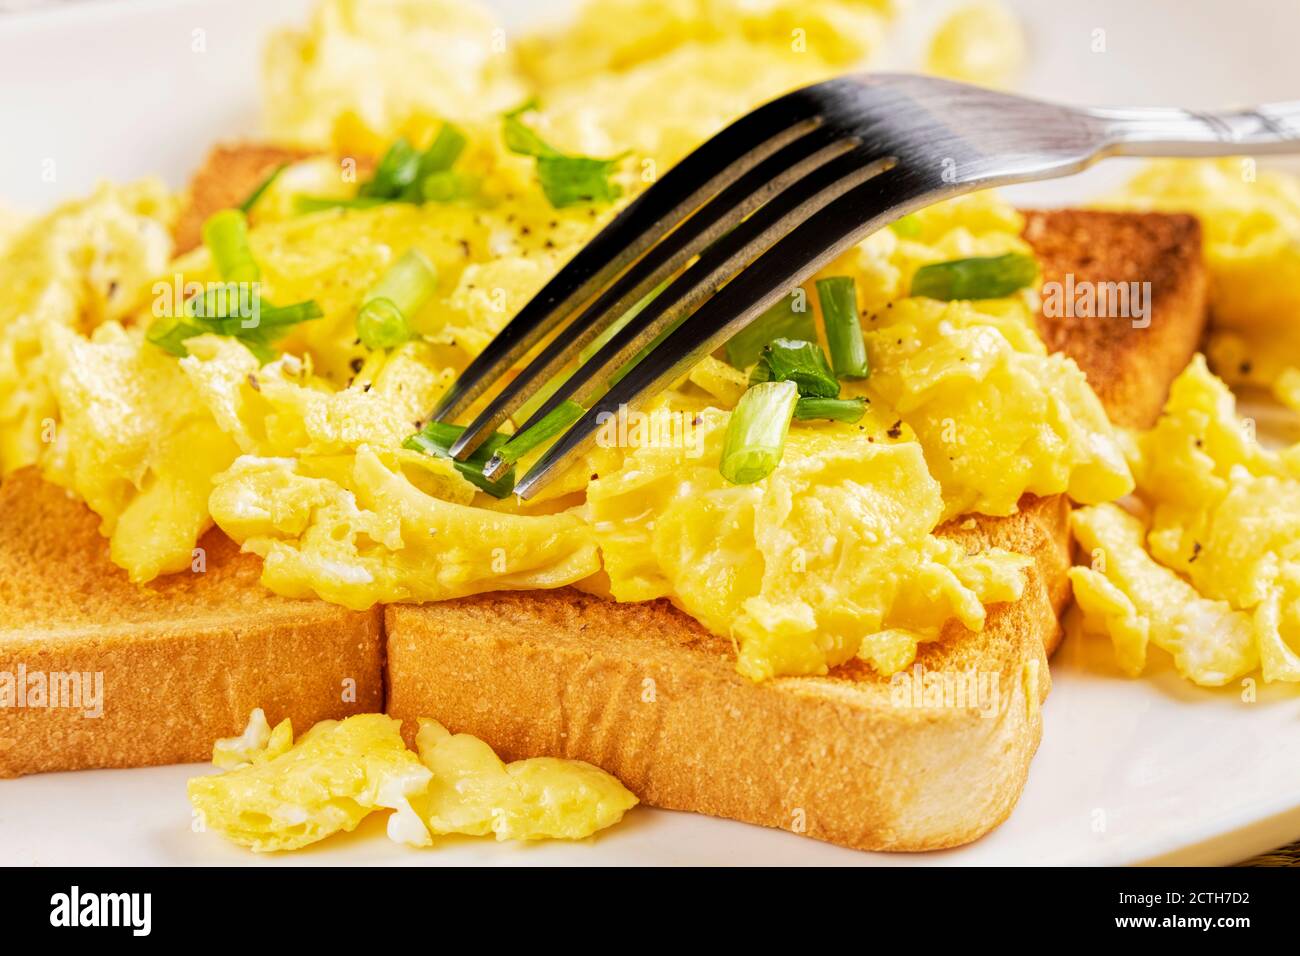 Una deliziosa colazione a base di uova strapazzate e pane tostato con copia spazio Foto Stock